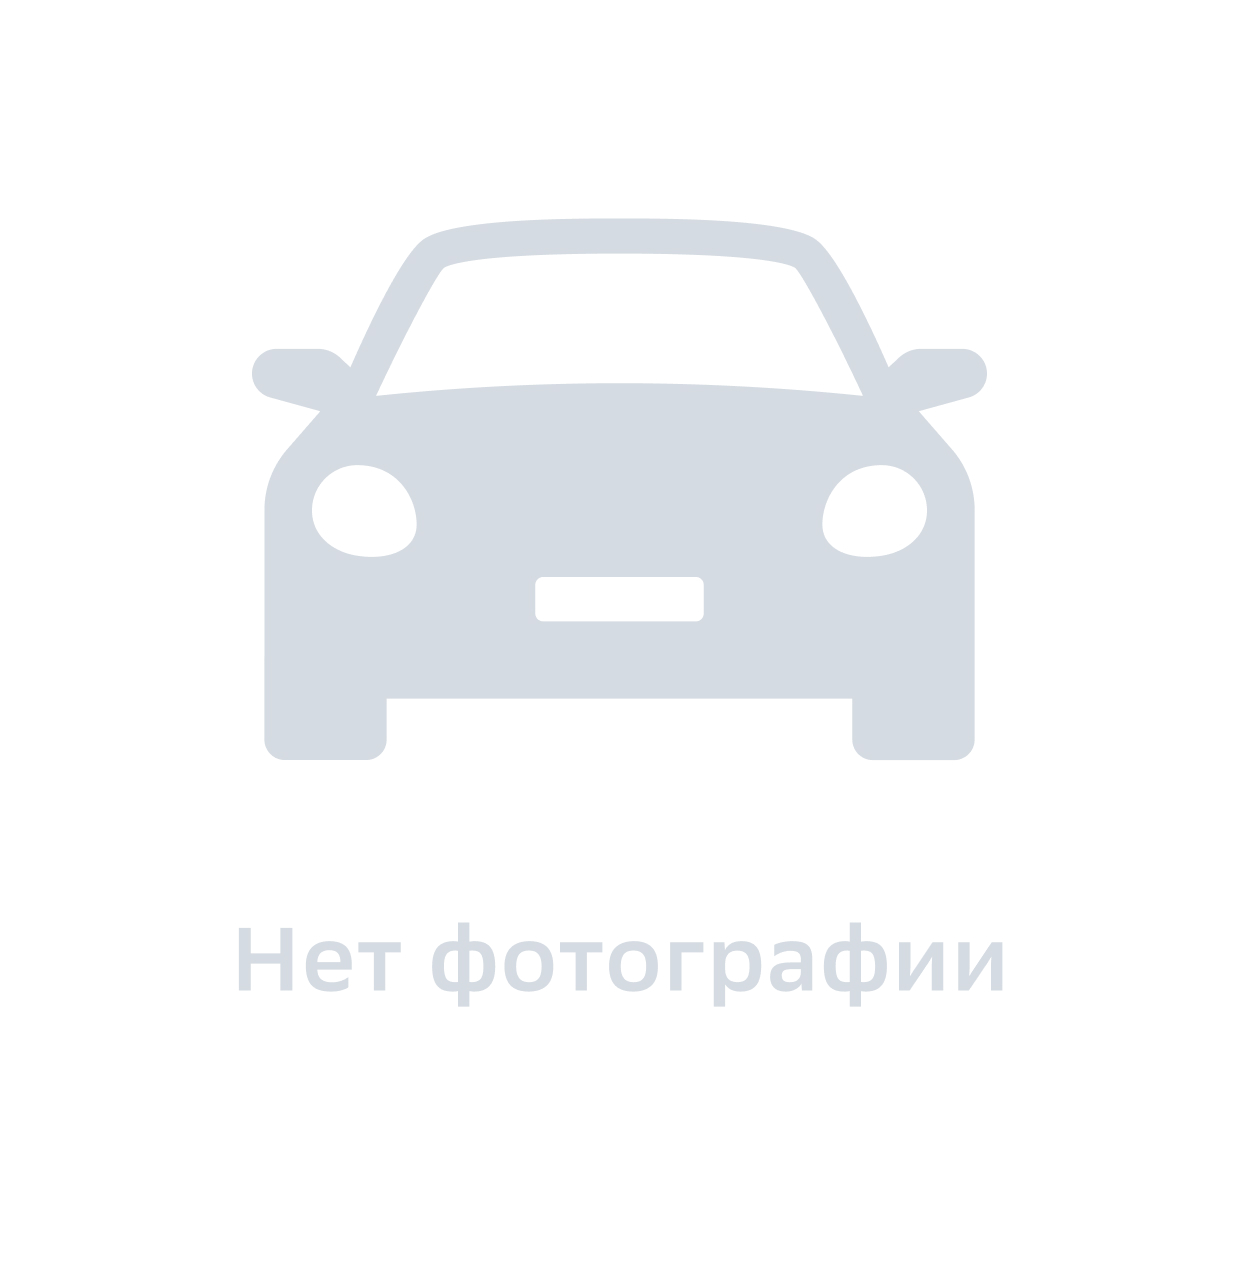 Маслоотражательный Колпачок Hyundai-KIA арт. 15732-30001